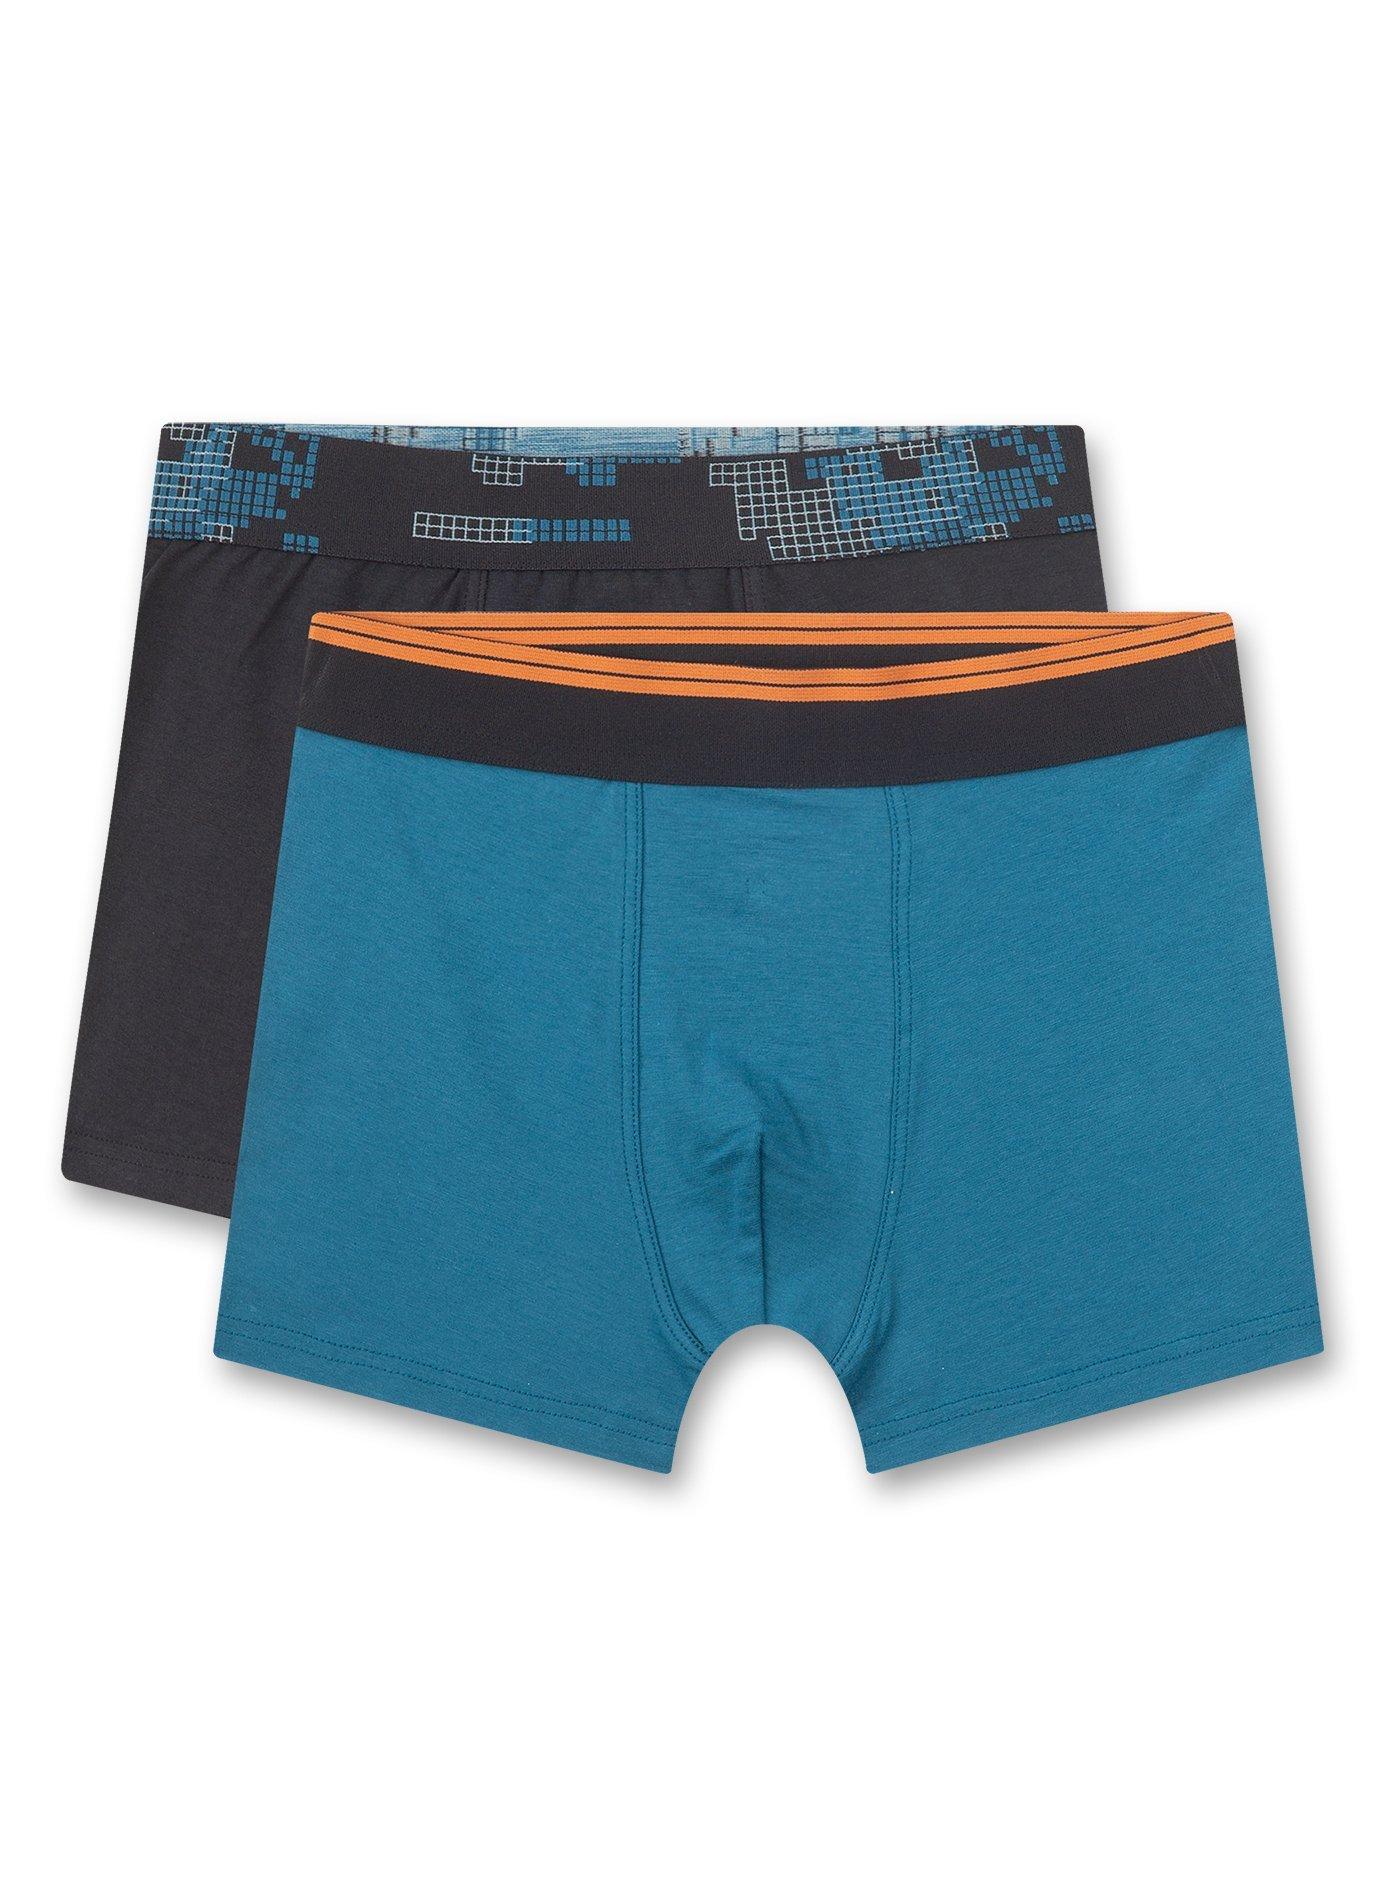 Sanetta  Jungen-Shorts (Doppelpack) Blau 